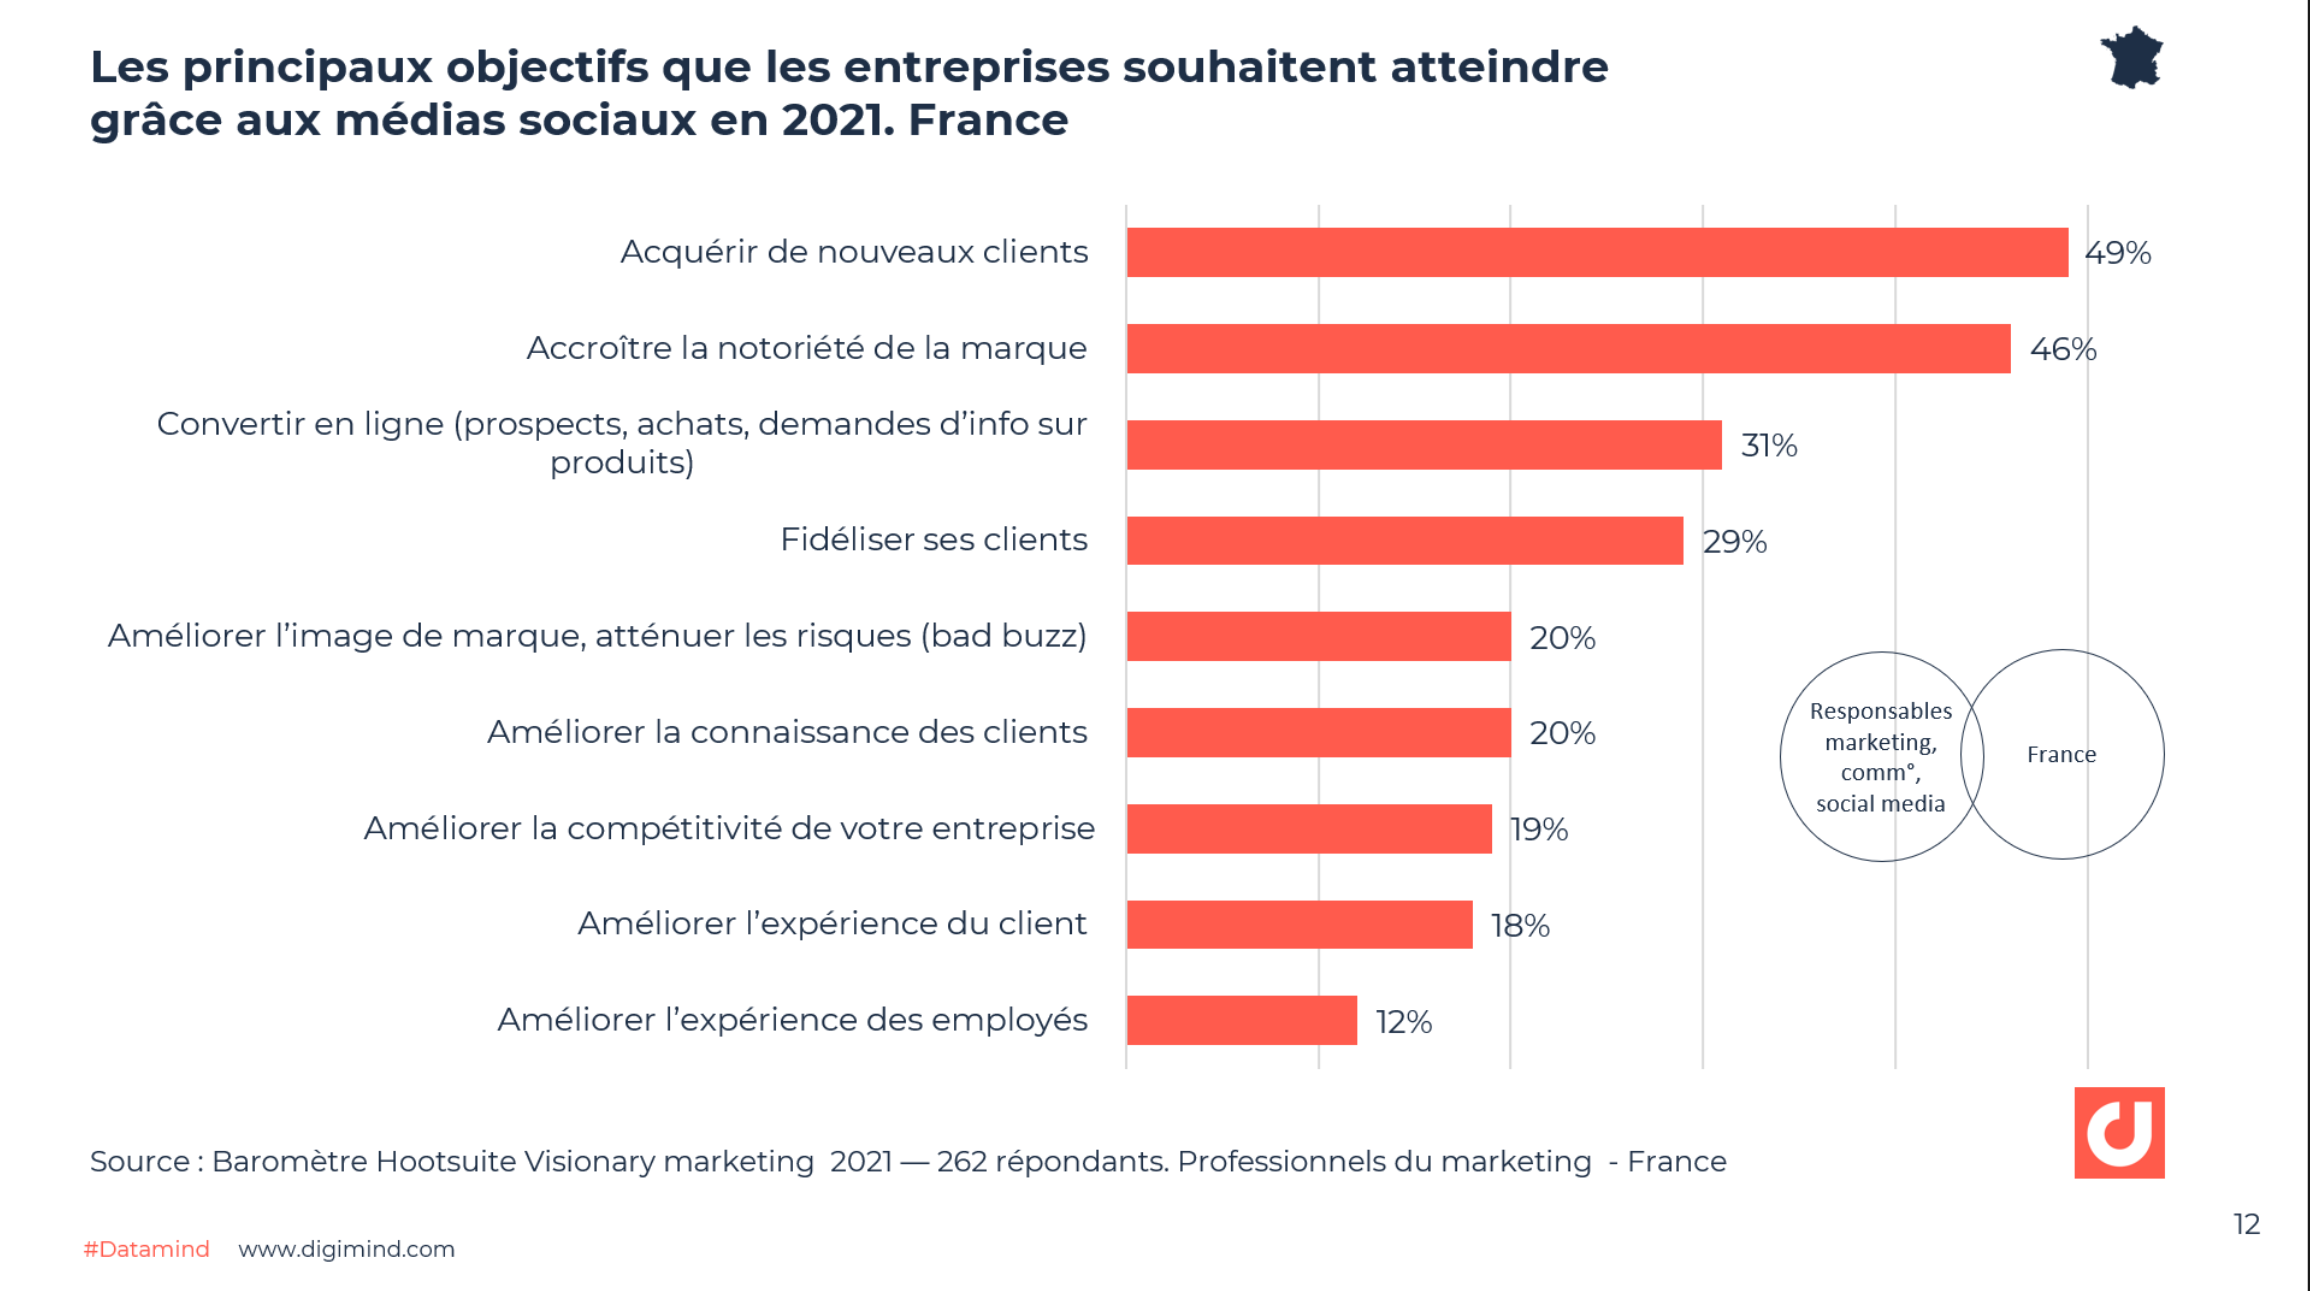 Les principaux objectifs que les entreprises souhaitent atteindre grâce aux médias sociaux en 2021. France